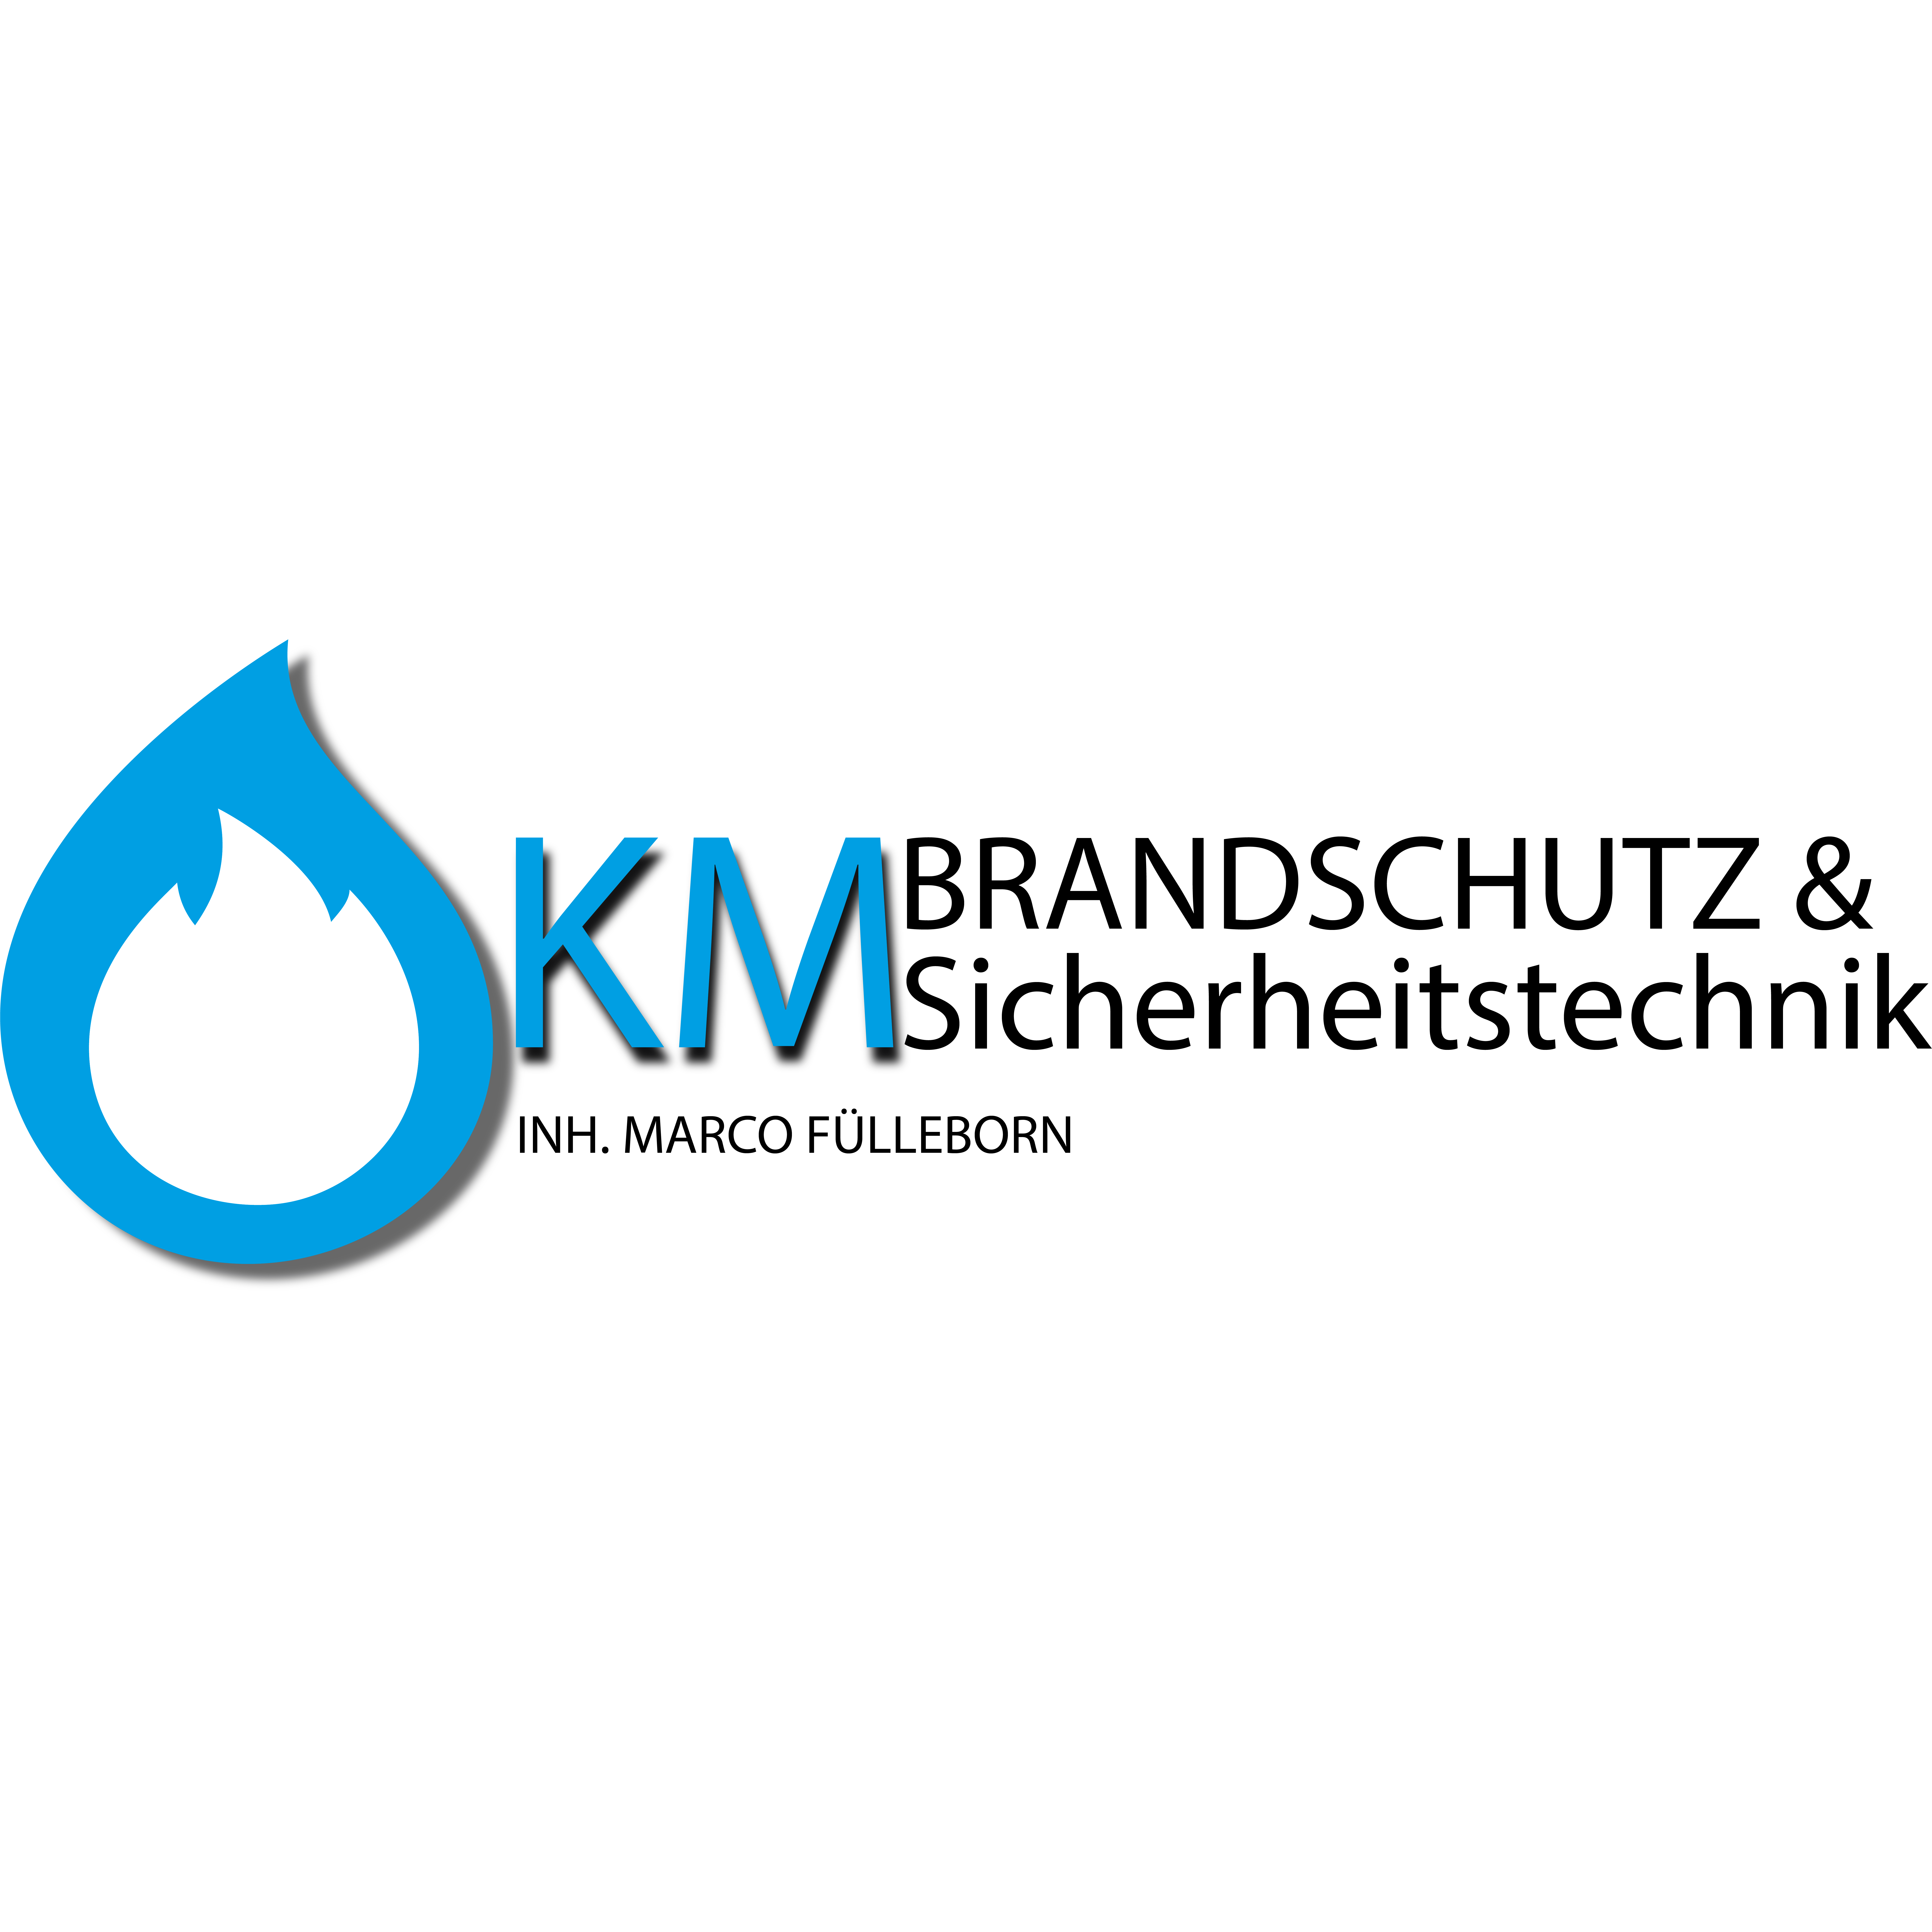 KM Brandschutz und Sicherheitstechnik - Fire Protection Service - Duisburg - 0203 60169141 Germany | ShowMeLocal.com